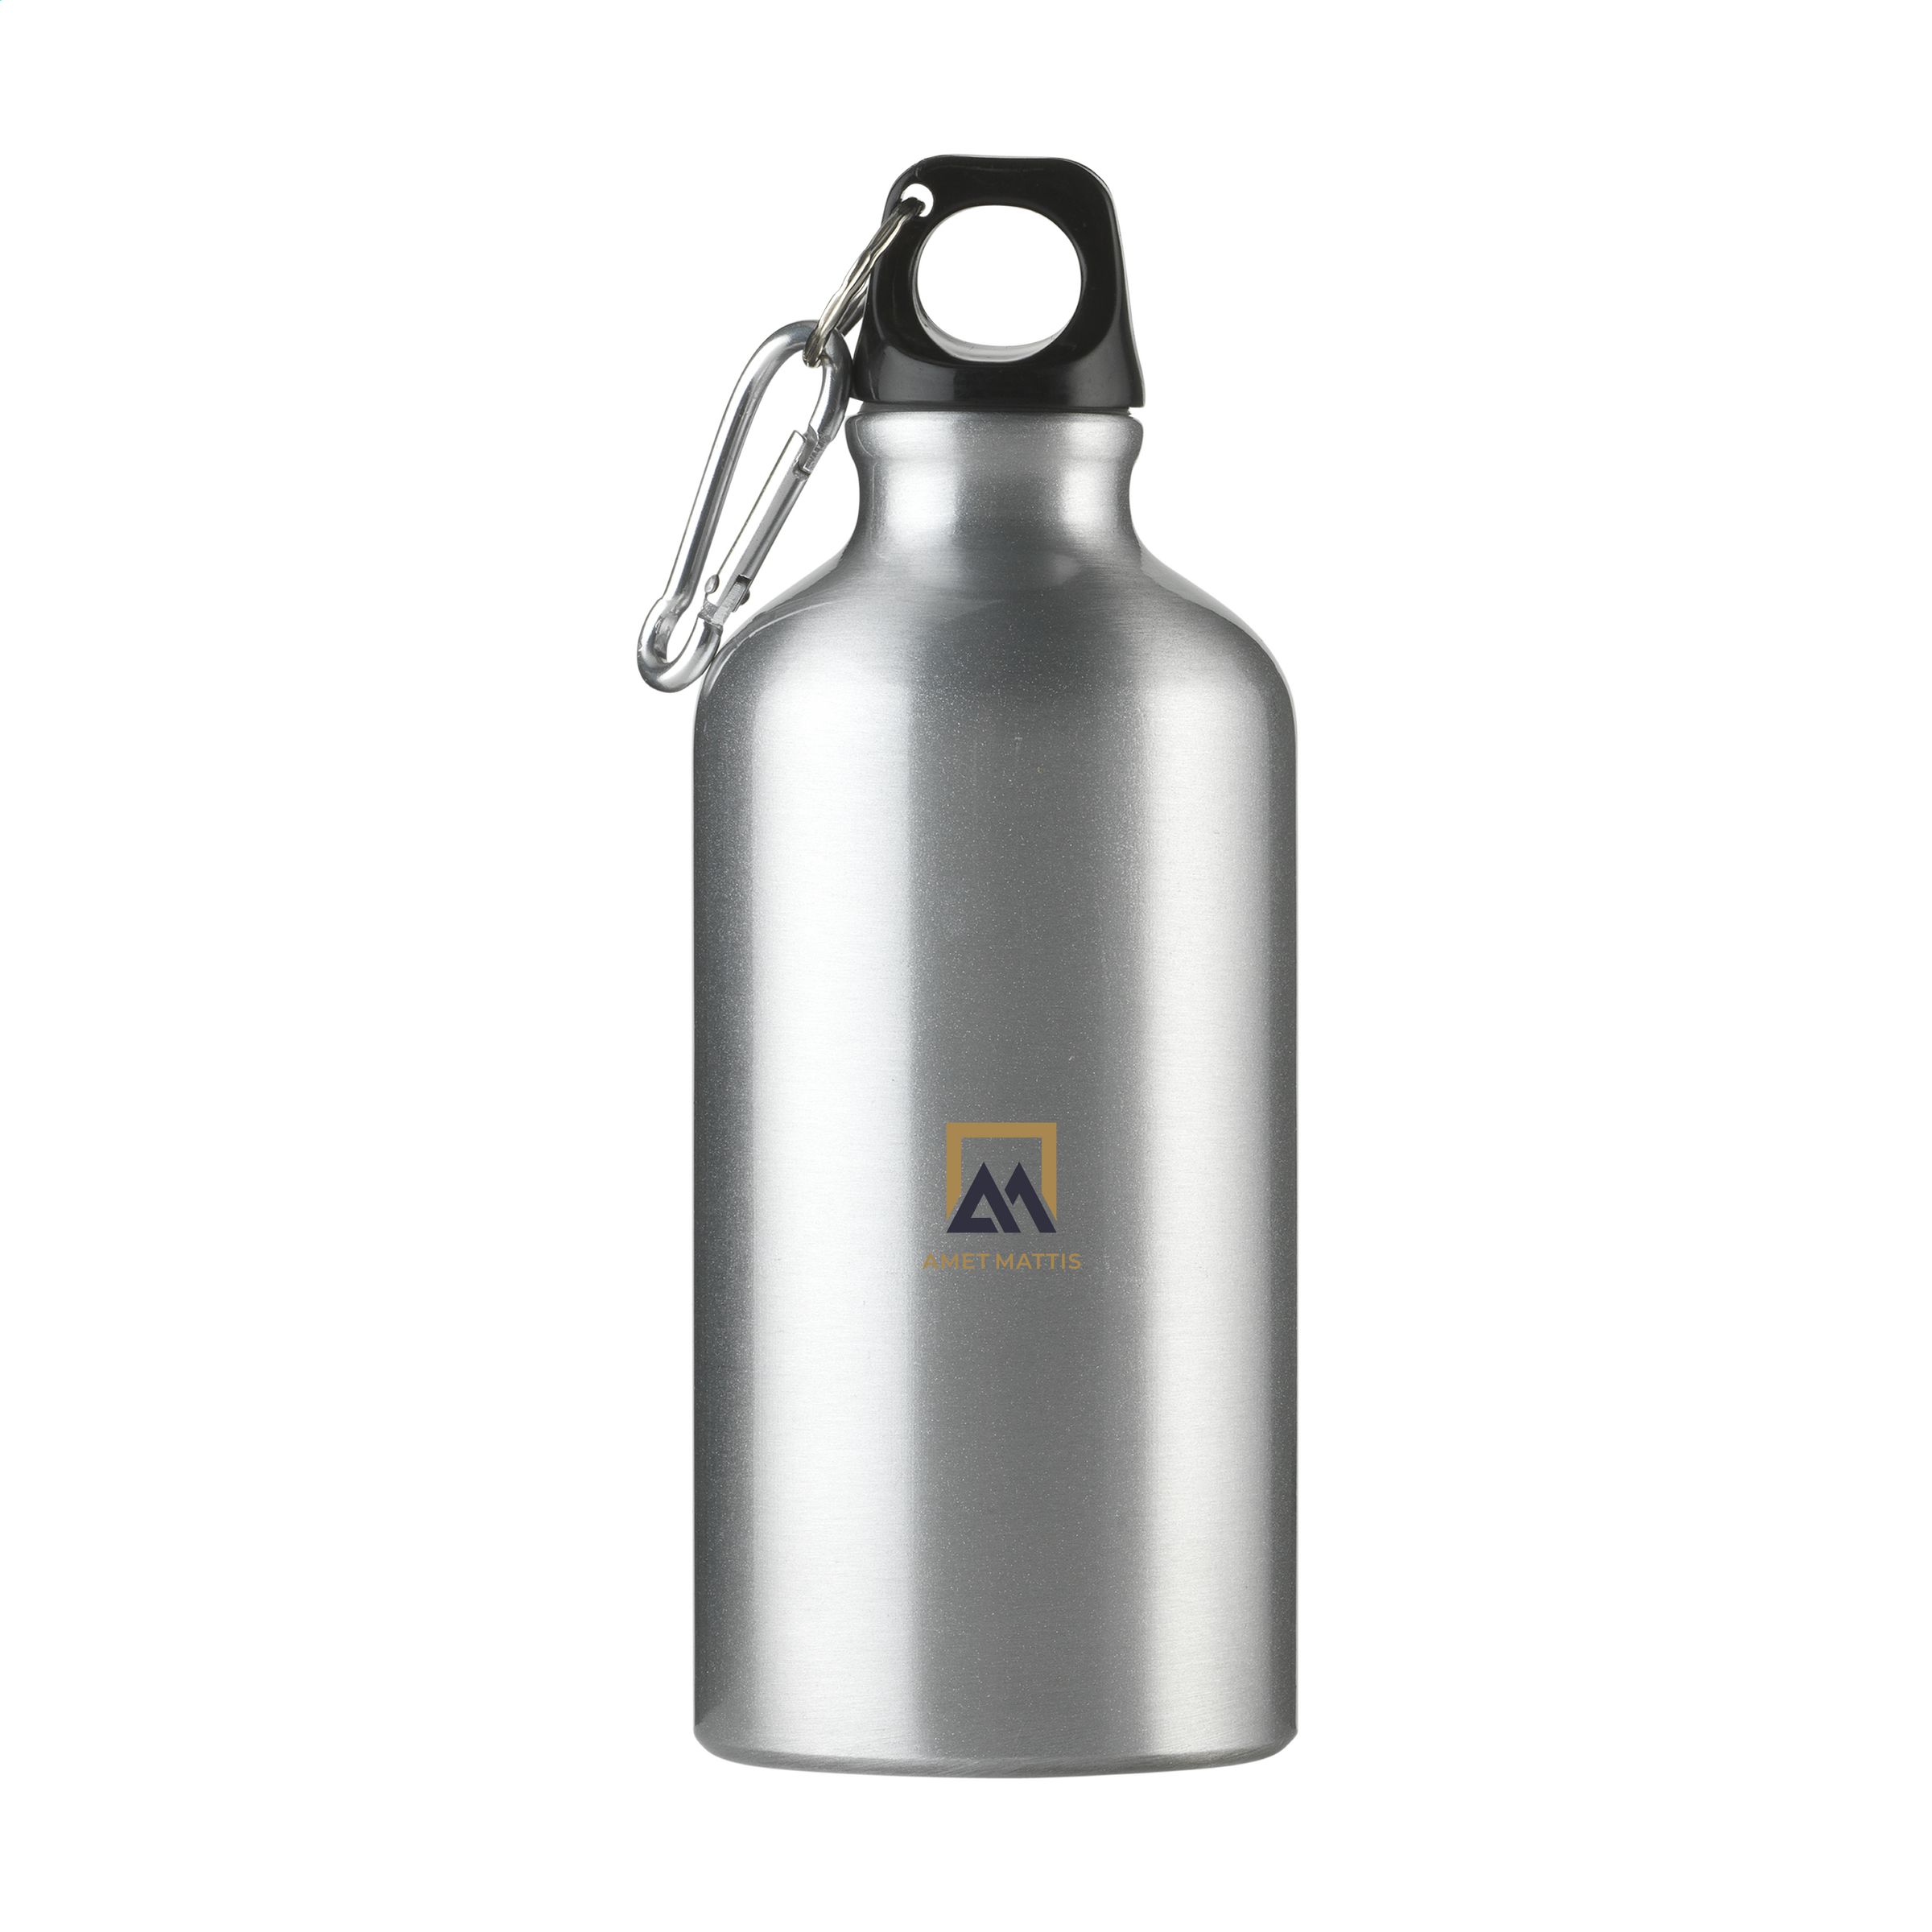 Recycelte Aluminium-Wasserflasche mit Karabiner - Erbach 